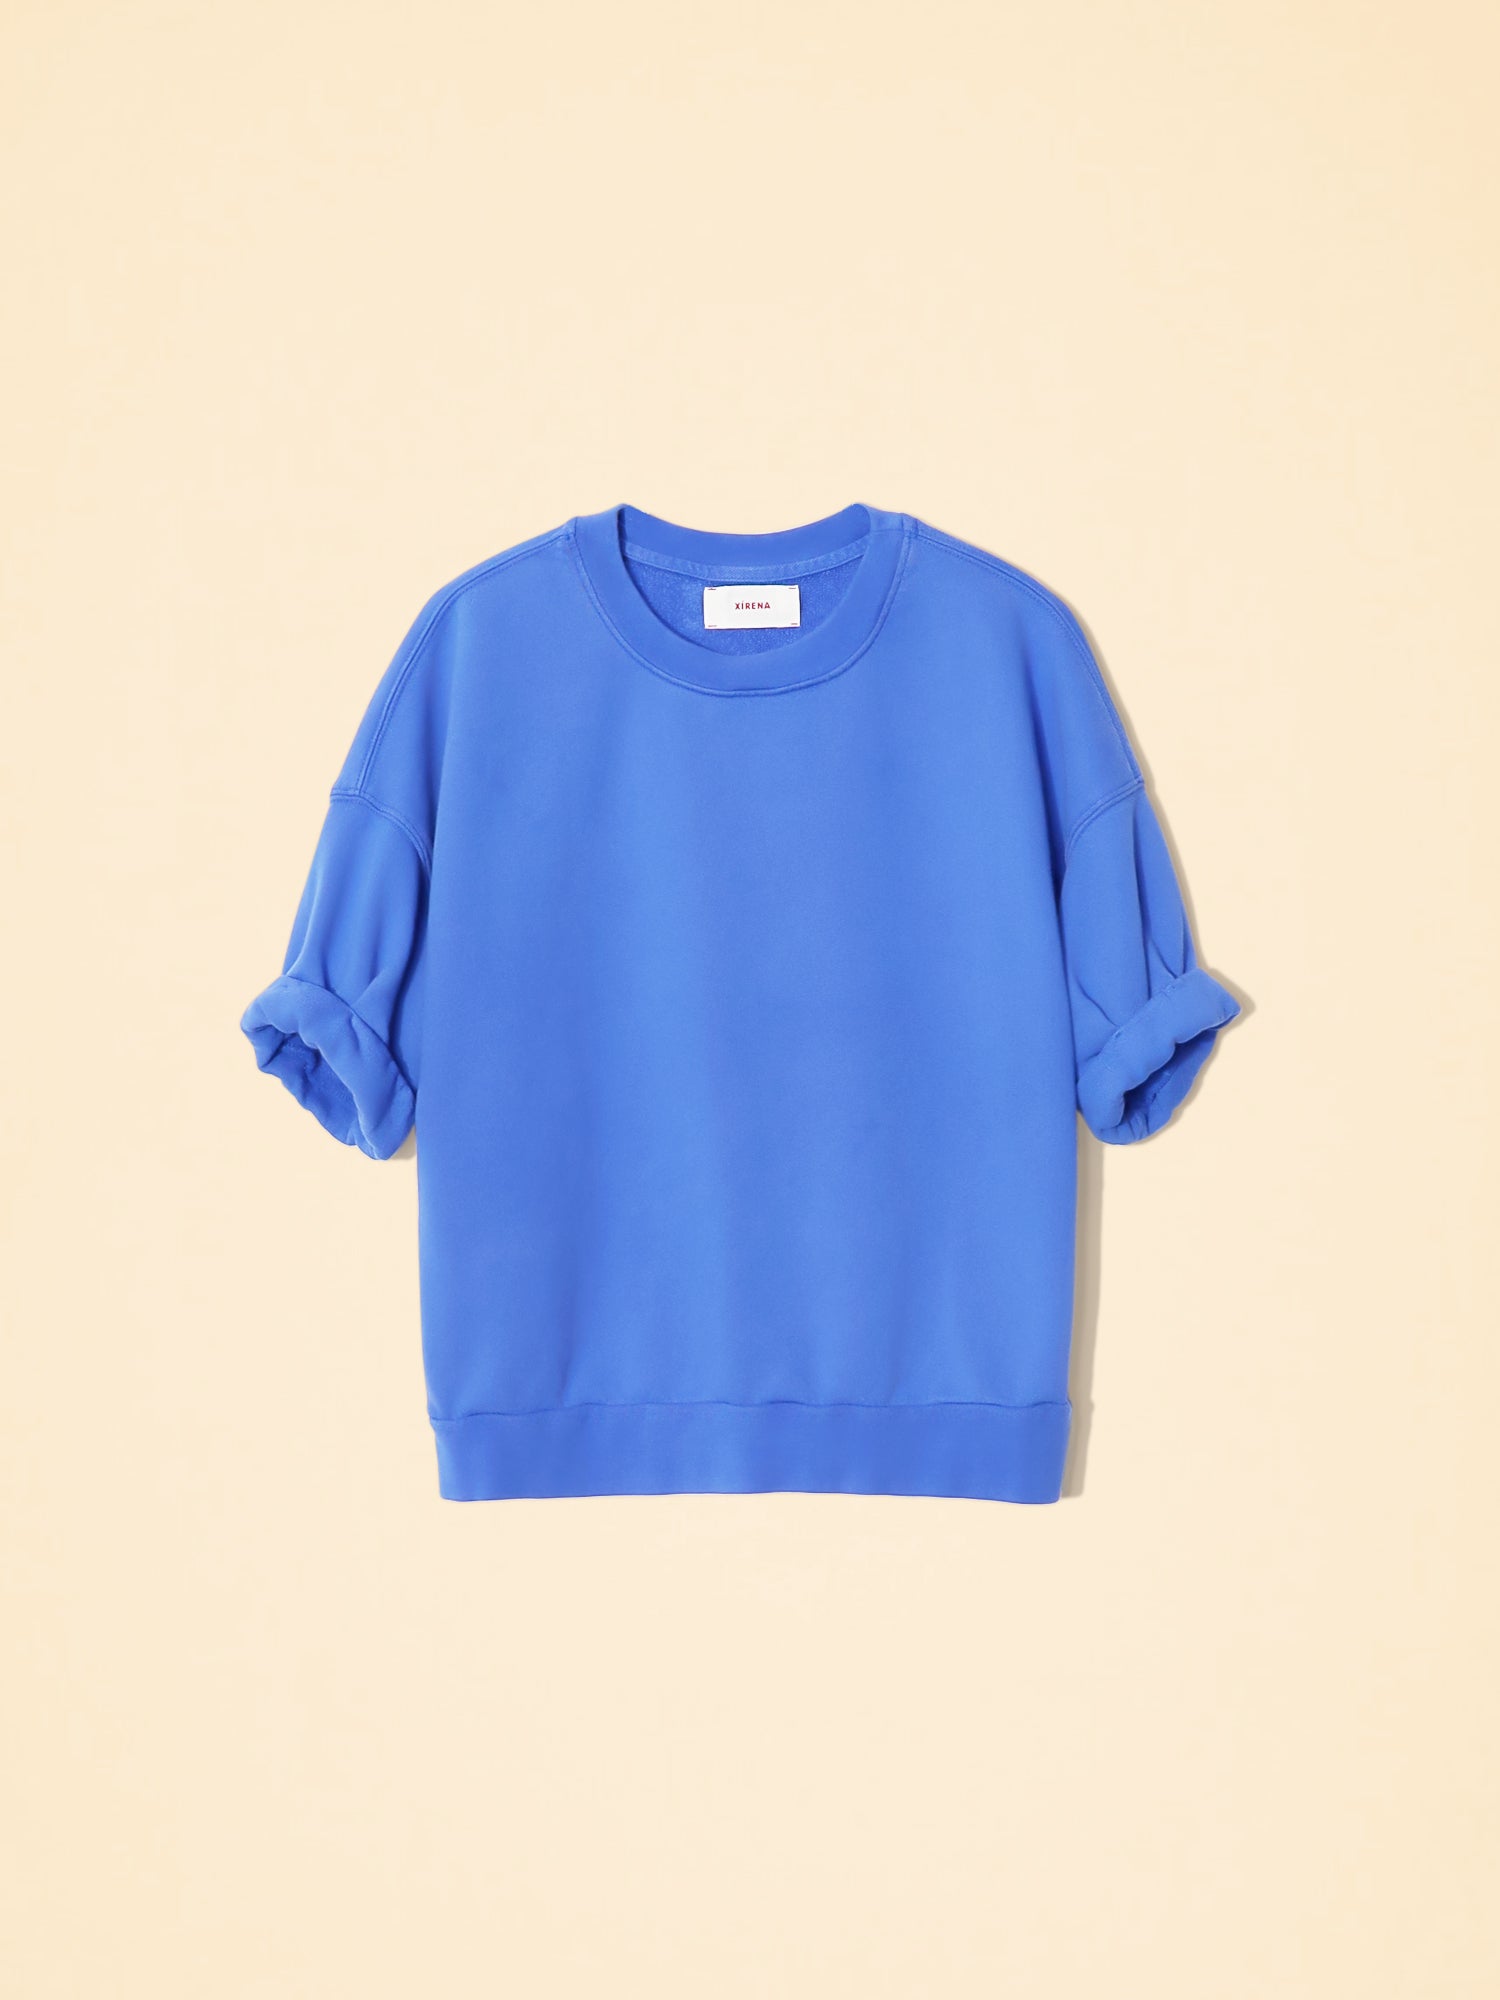 Xirena Trixie Sweatshirt-Tops-Misch-Boutique-Vancouver-Canada-misch.ca